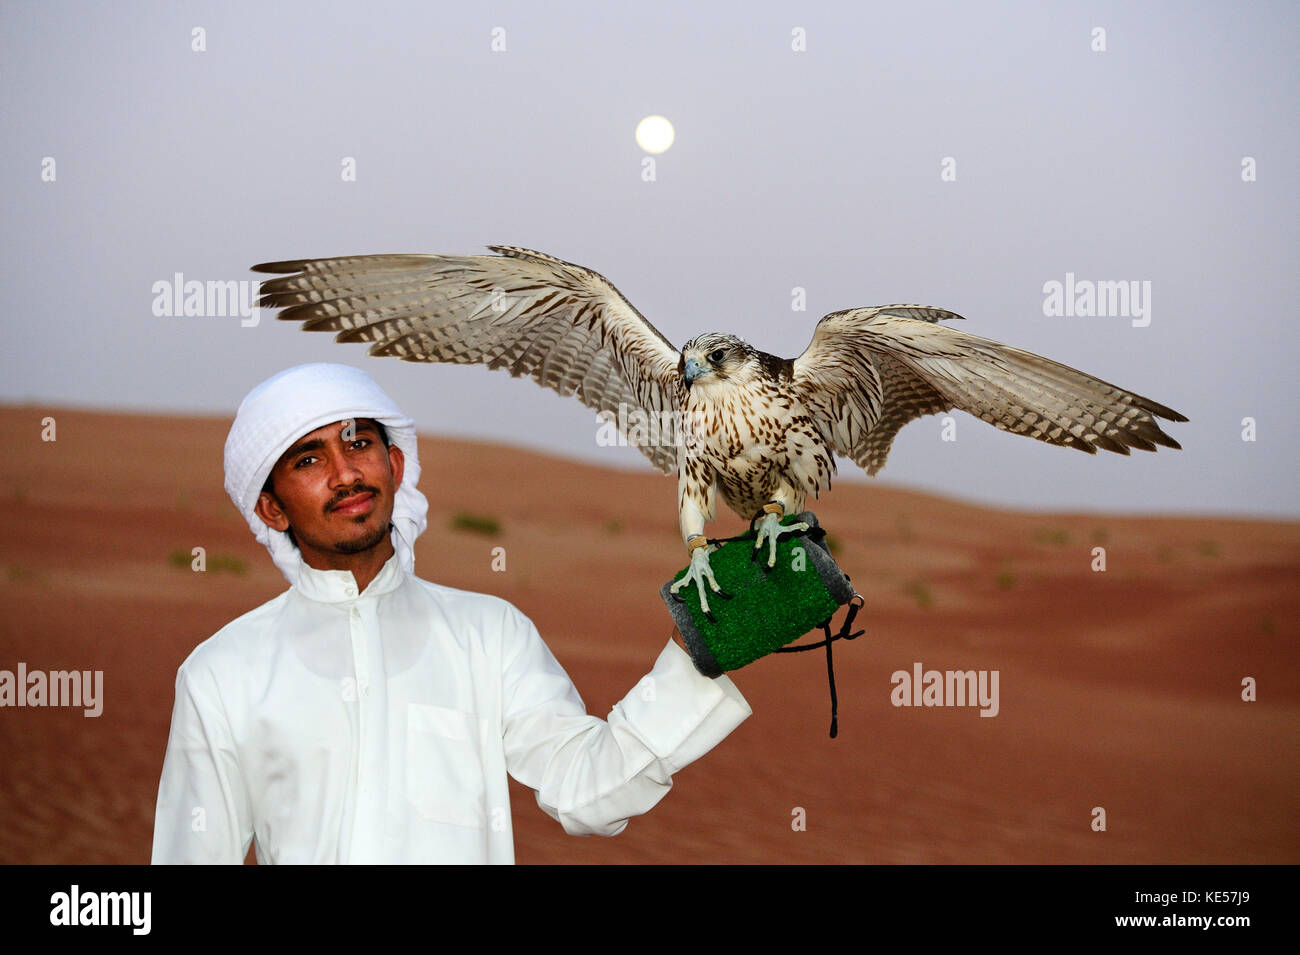 Falconer with Falcon, Liwa Desert, Abu Dhabi, United Arab Emirates Stock Photo